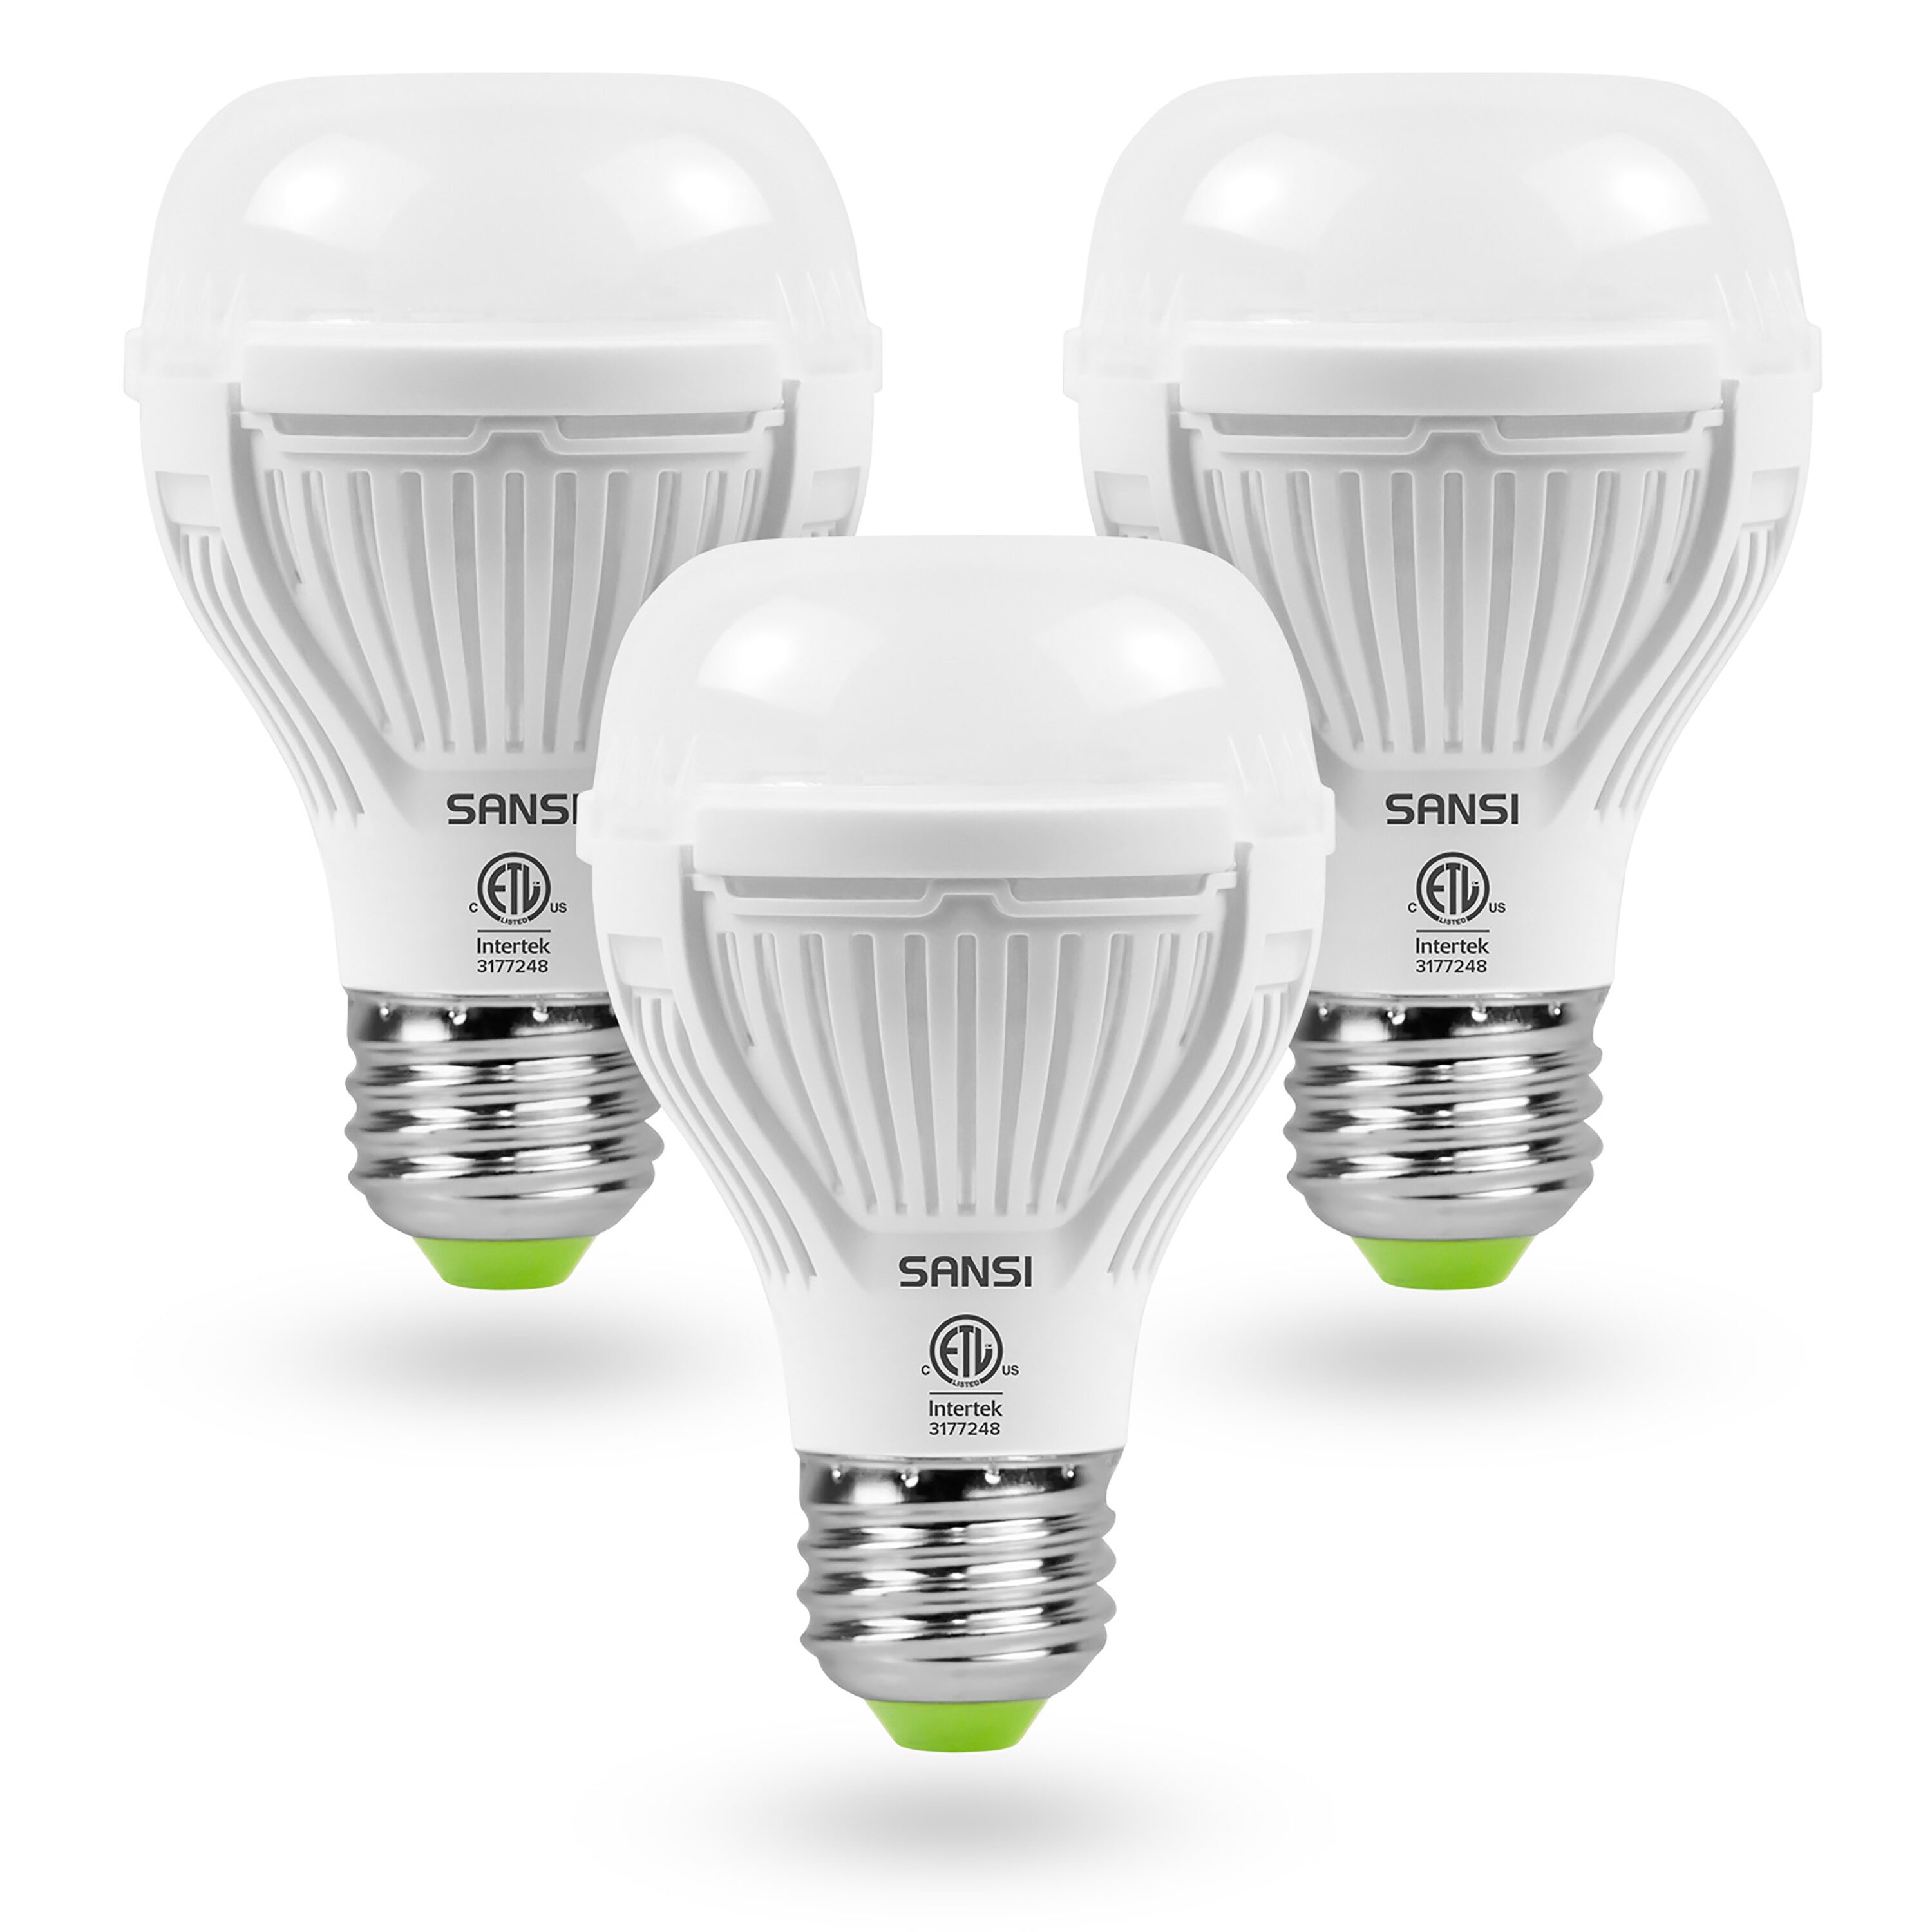 SANSI 150W Lampe à LED de Croissance Lampe Plante Horticole P20 Ampoule E27  CE 6974466753616